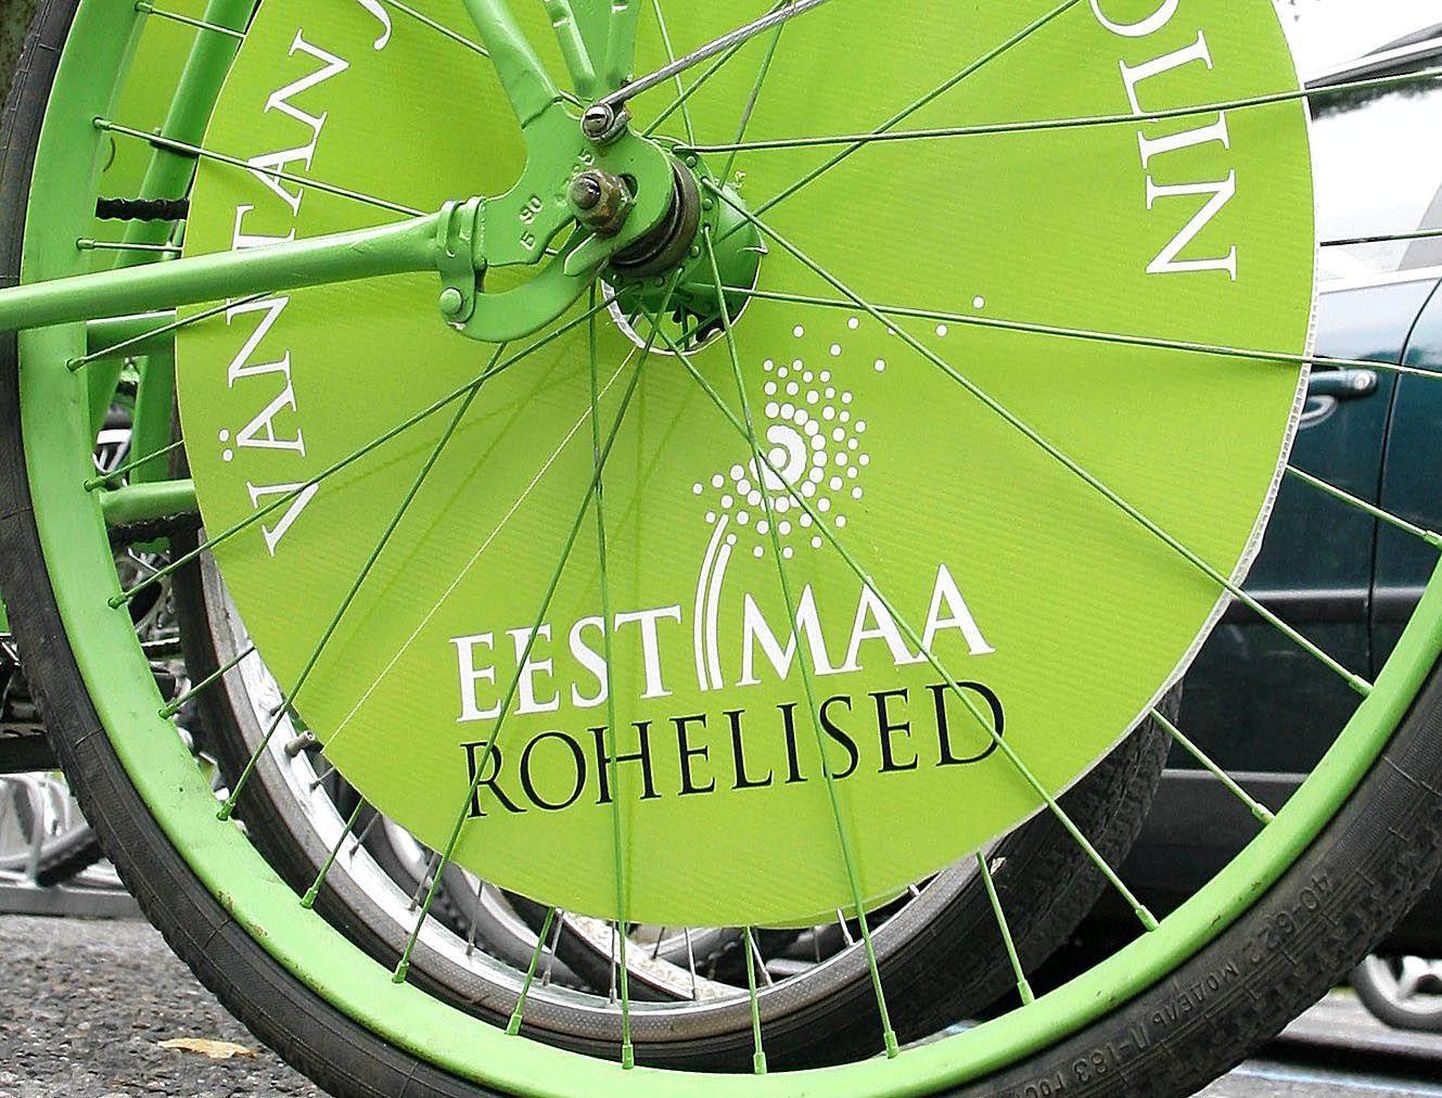 Eestimaa Roheliste logo.